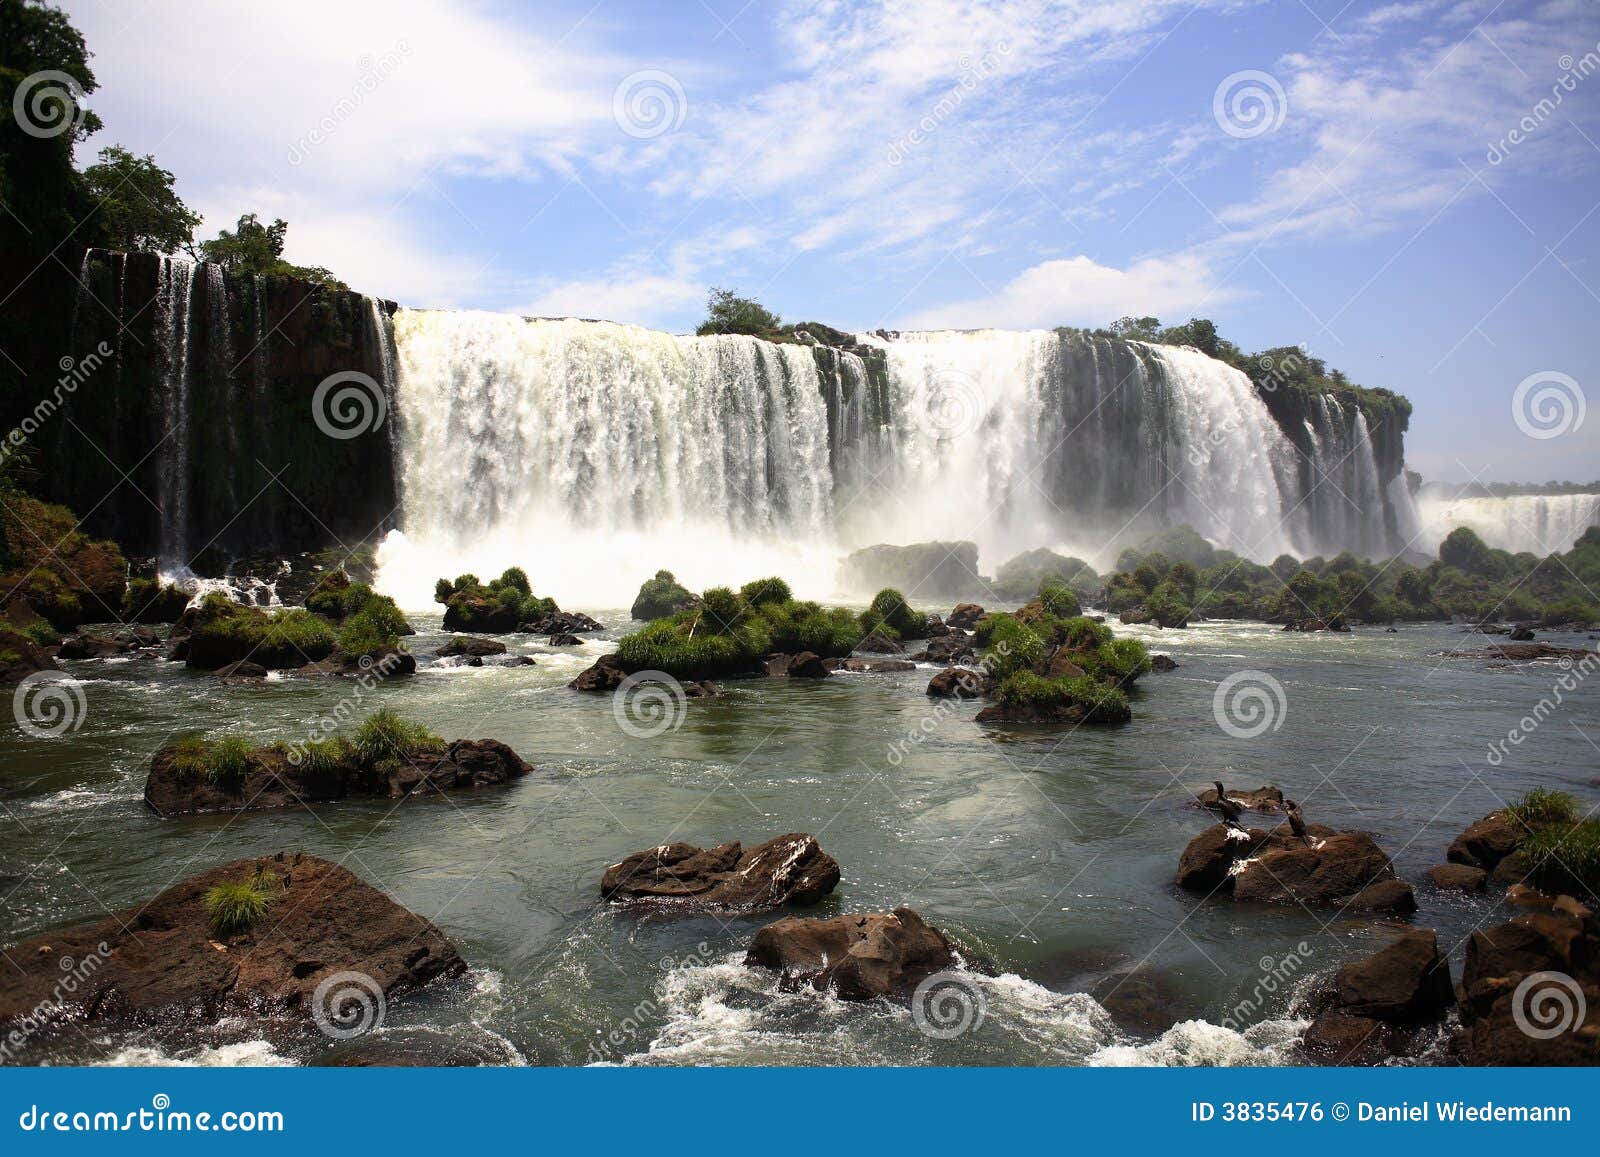 iguassu (iguazu; iguaÃÂ§u) falls - large waterfalls